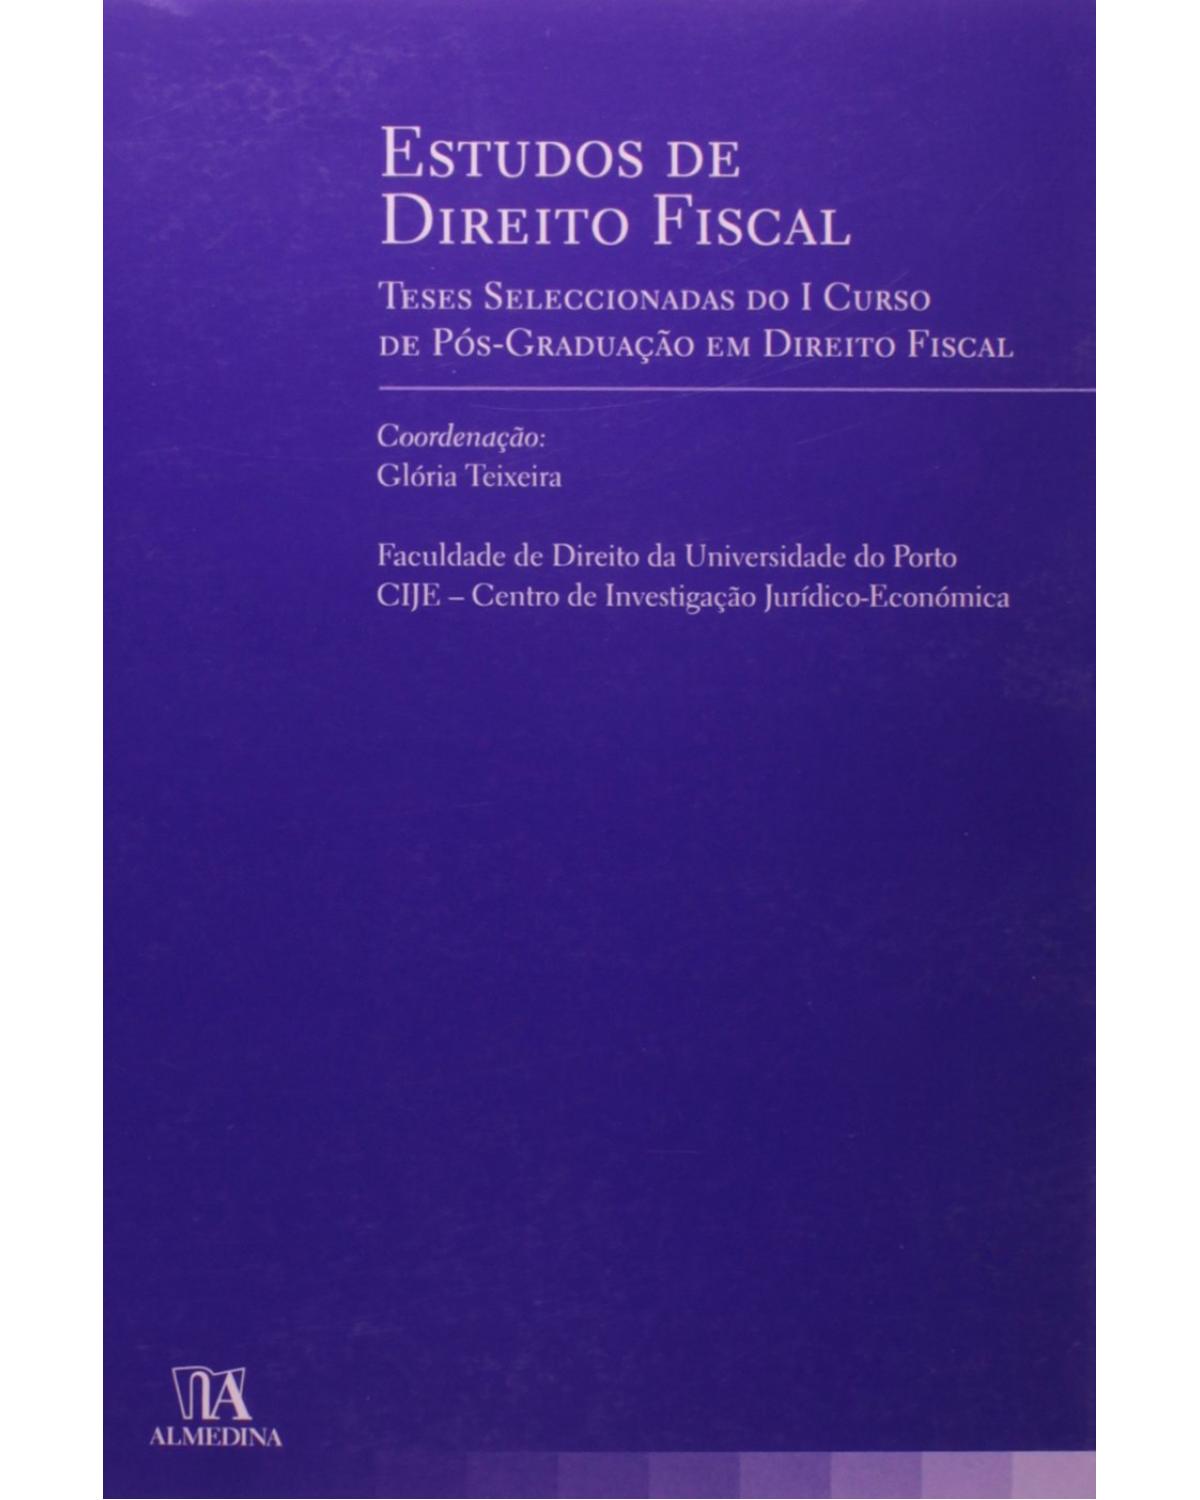 Estudos de direito fiscal - teses seleccionadas do I curso de pós-graduação em direito fiscal - 1ª Edição | 2006